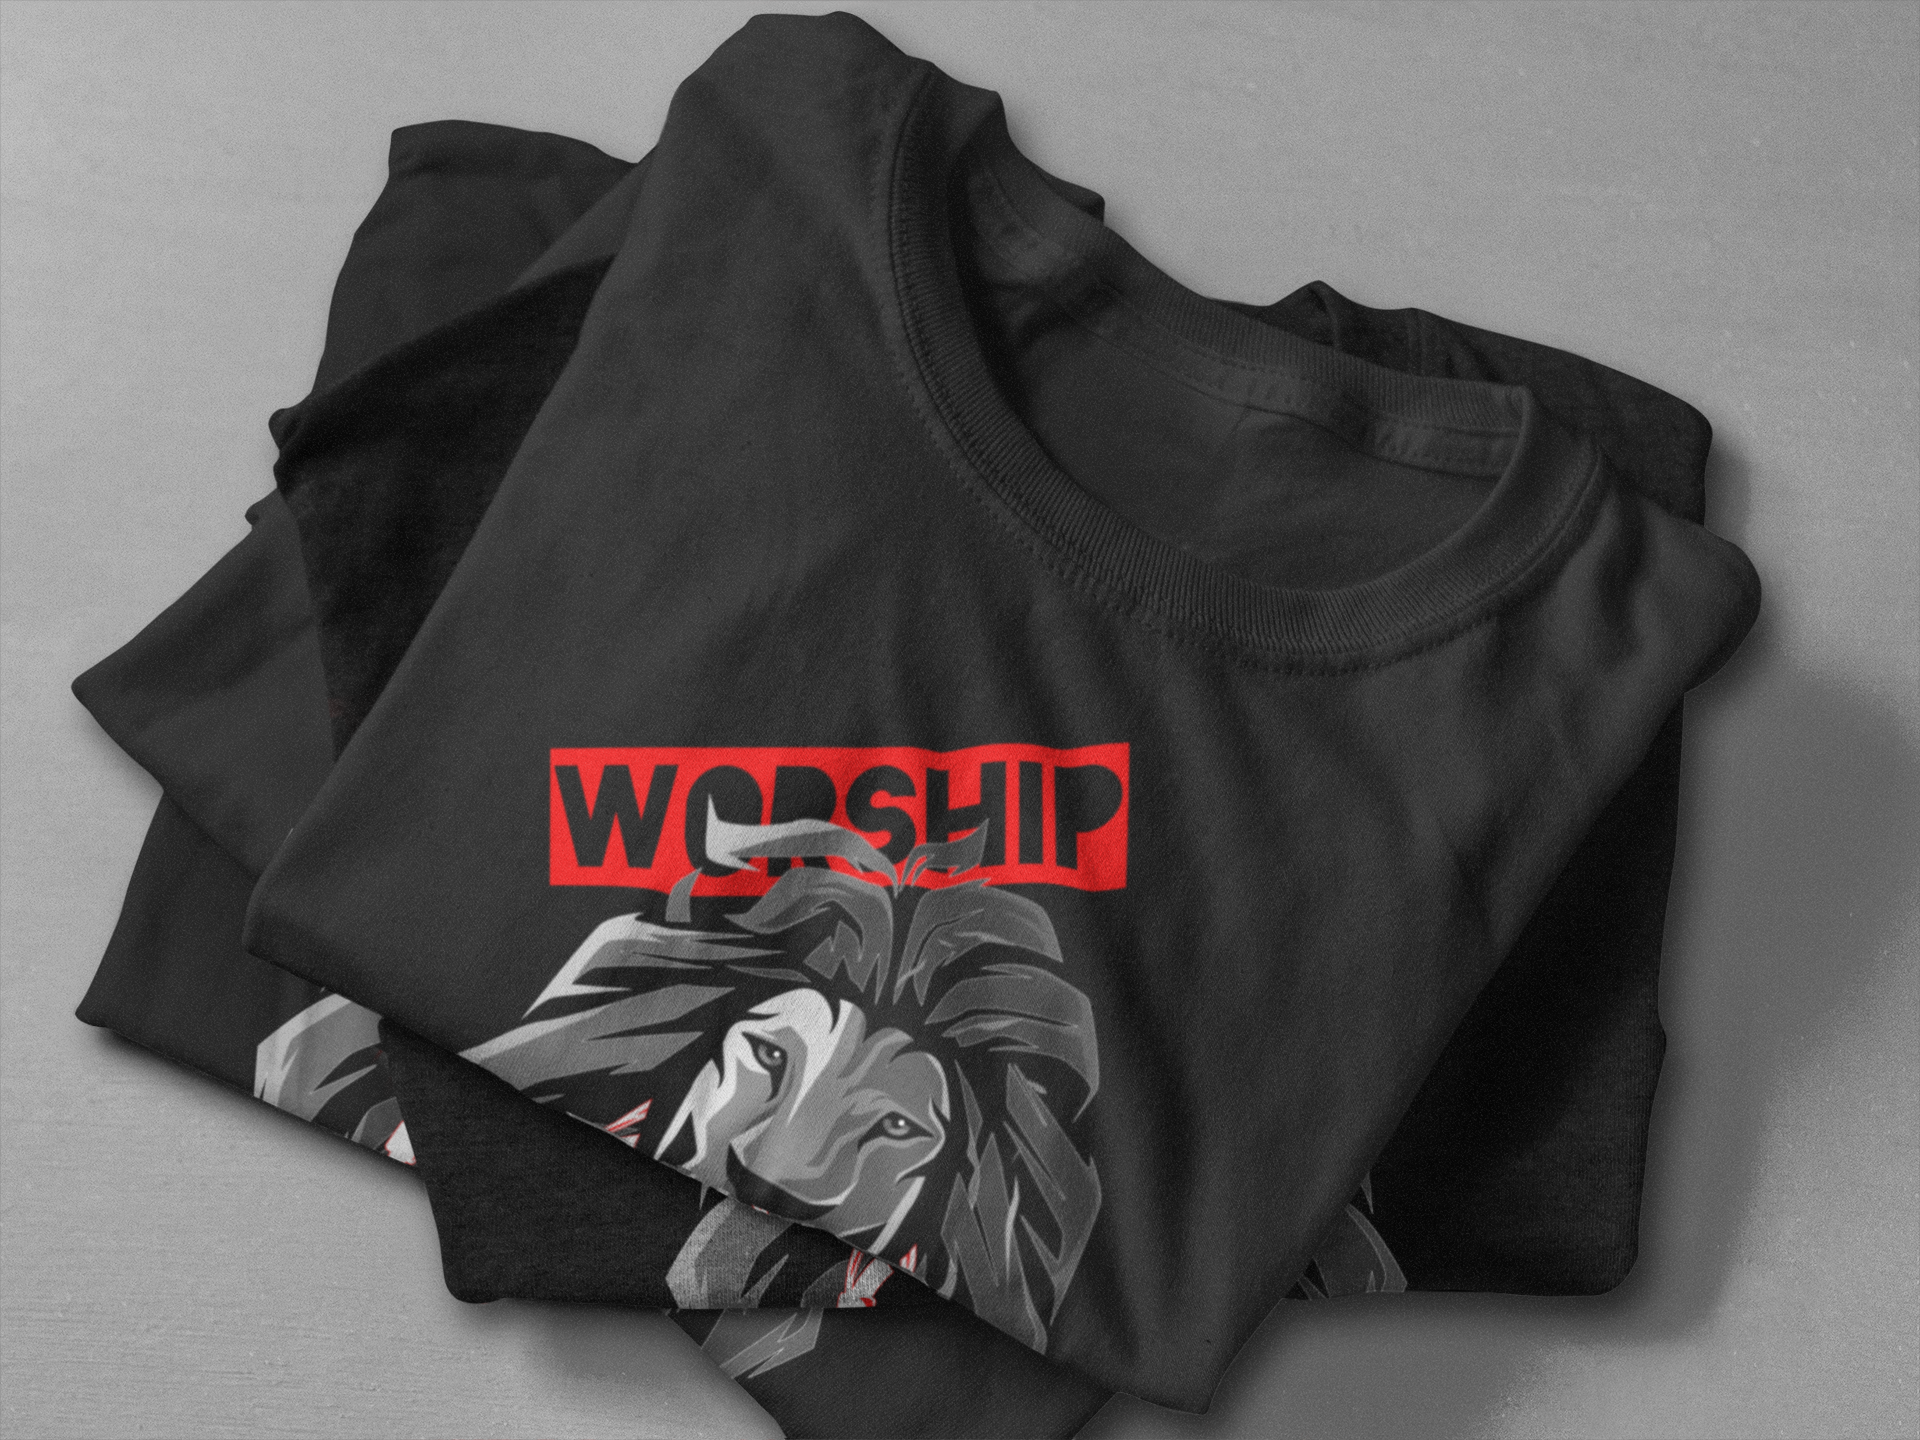 Worship is my music - Herren Shirt (Premium)